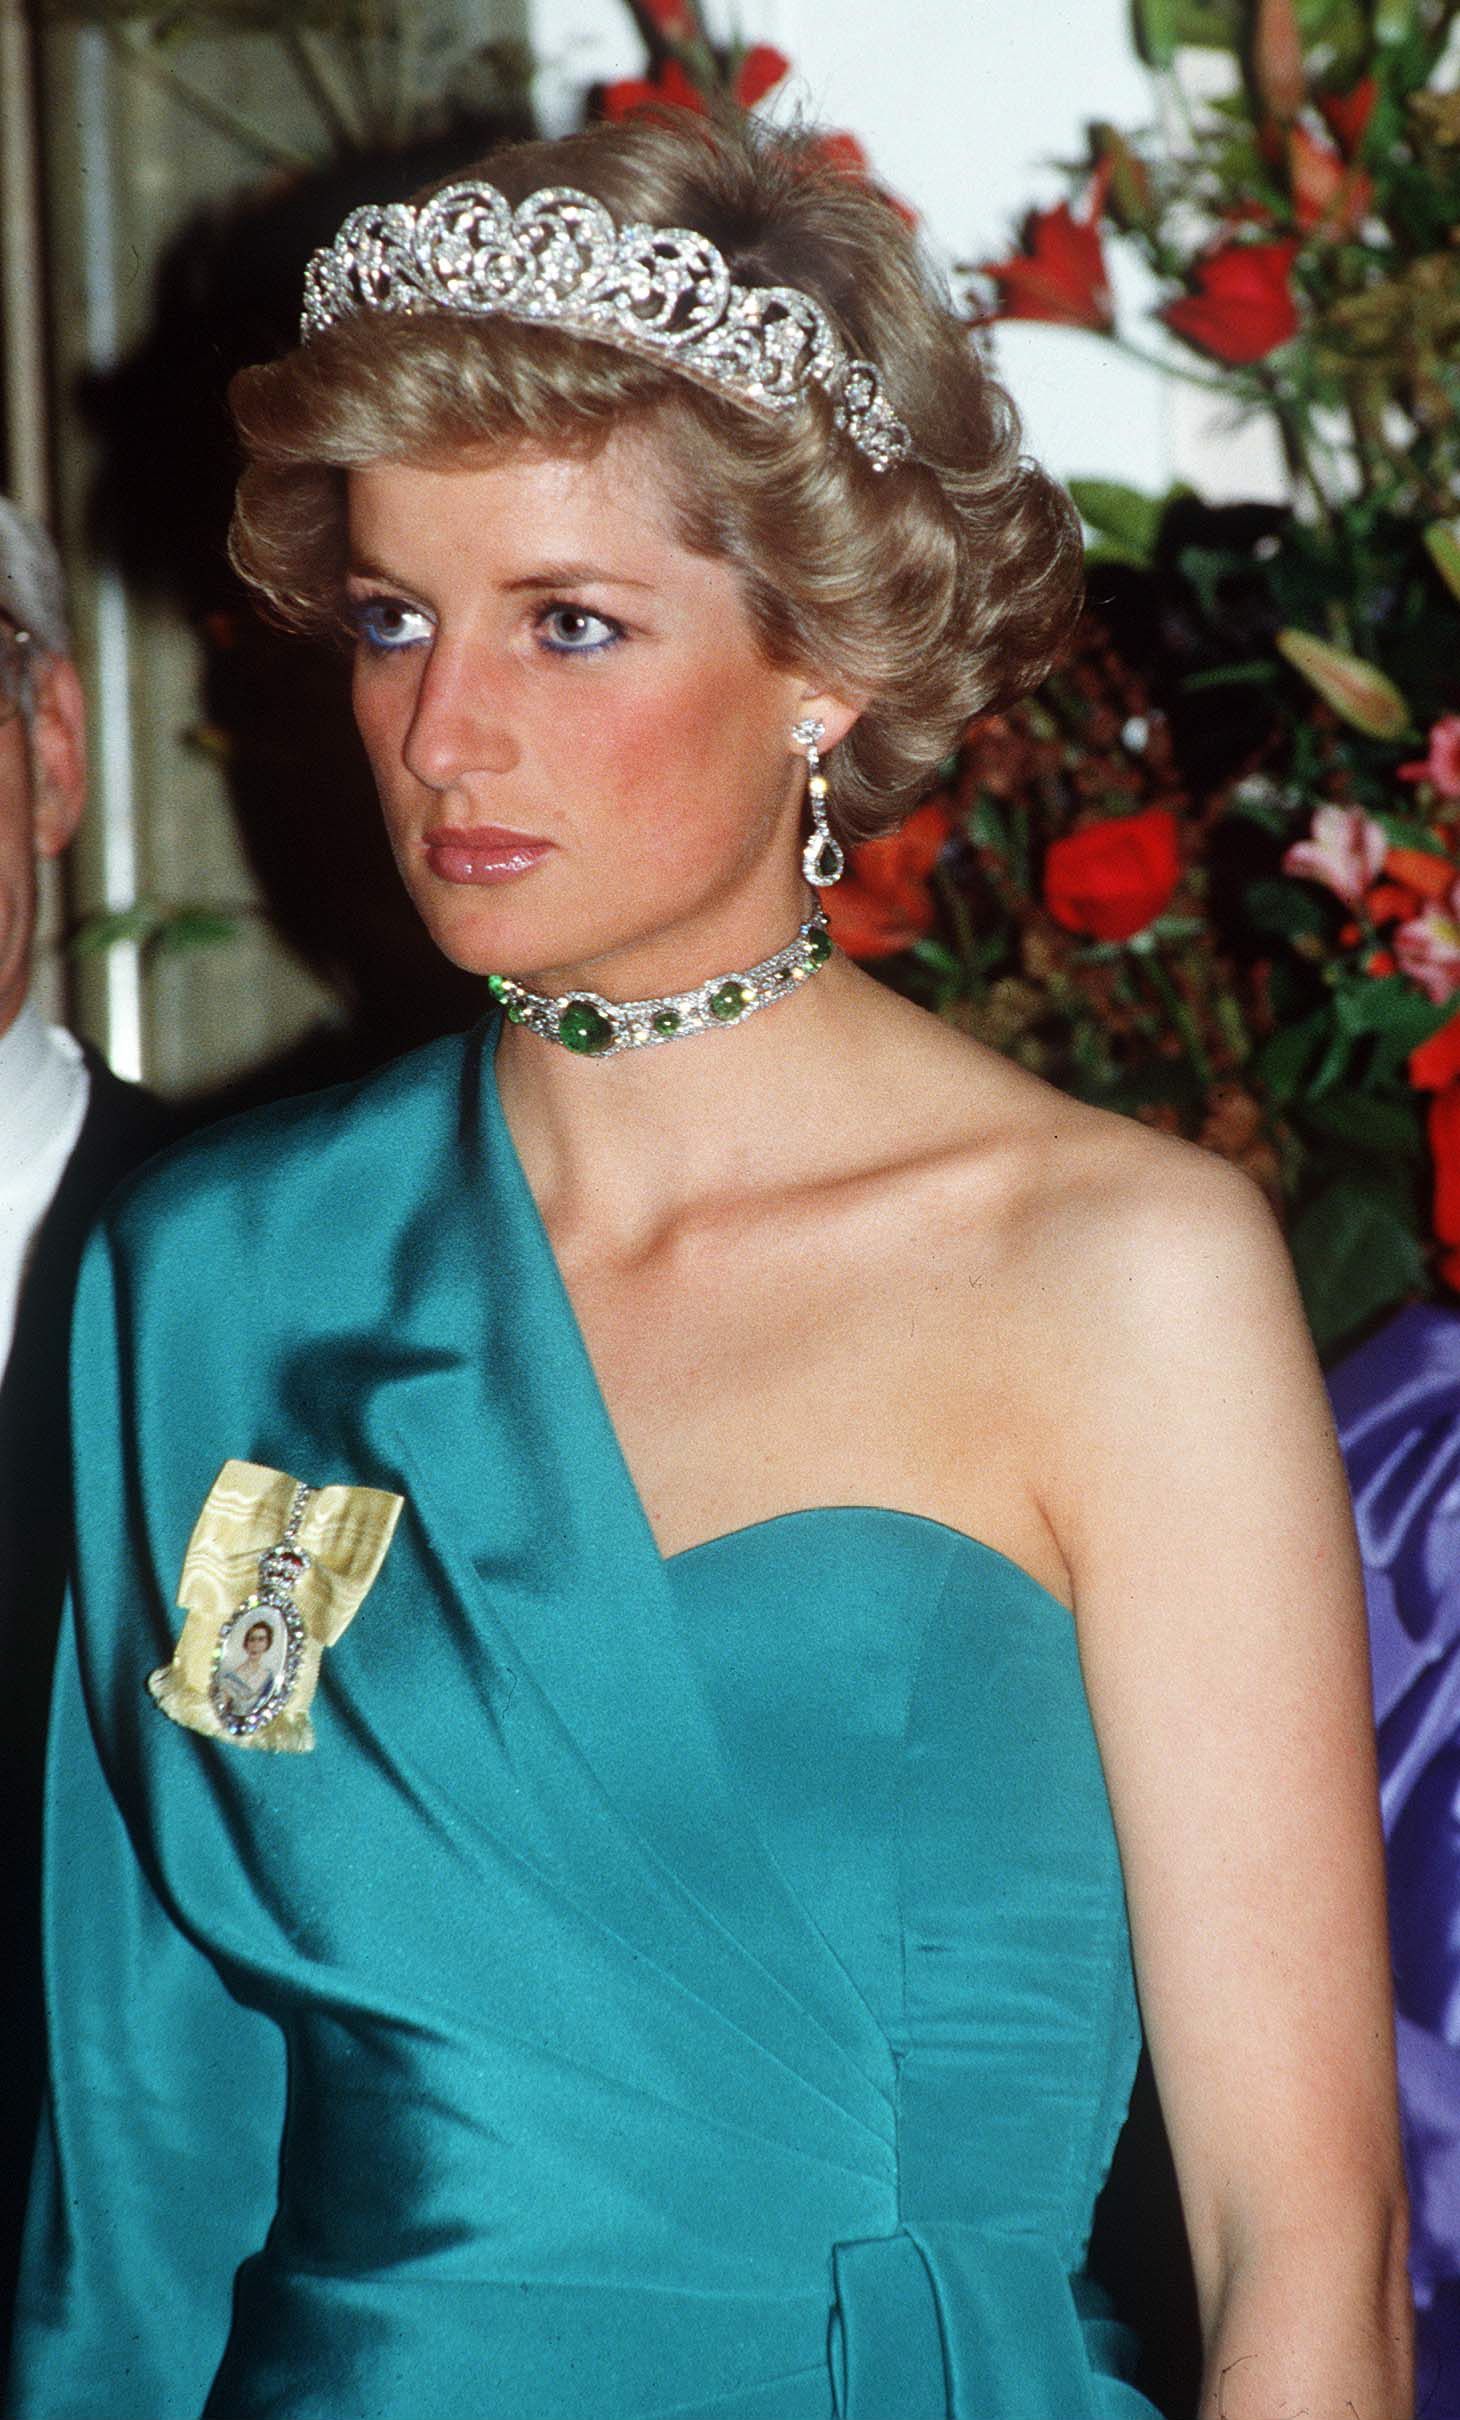 Deretan Perhiasan Mewah Paling Ikonik Milik Keluarga Kerajaan Inggris